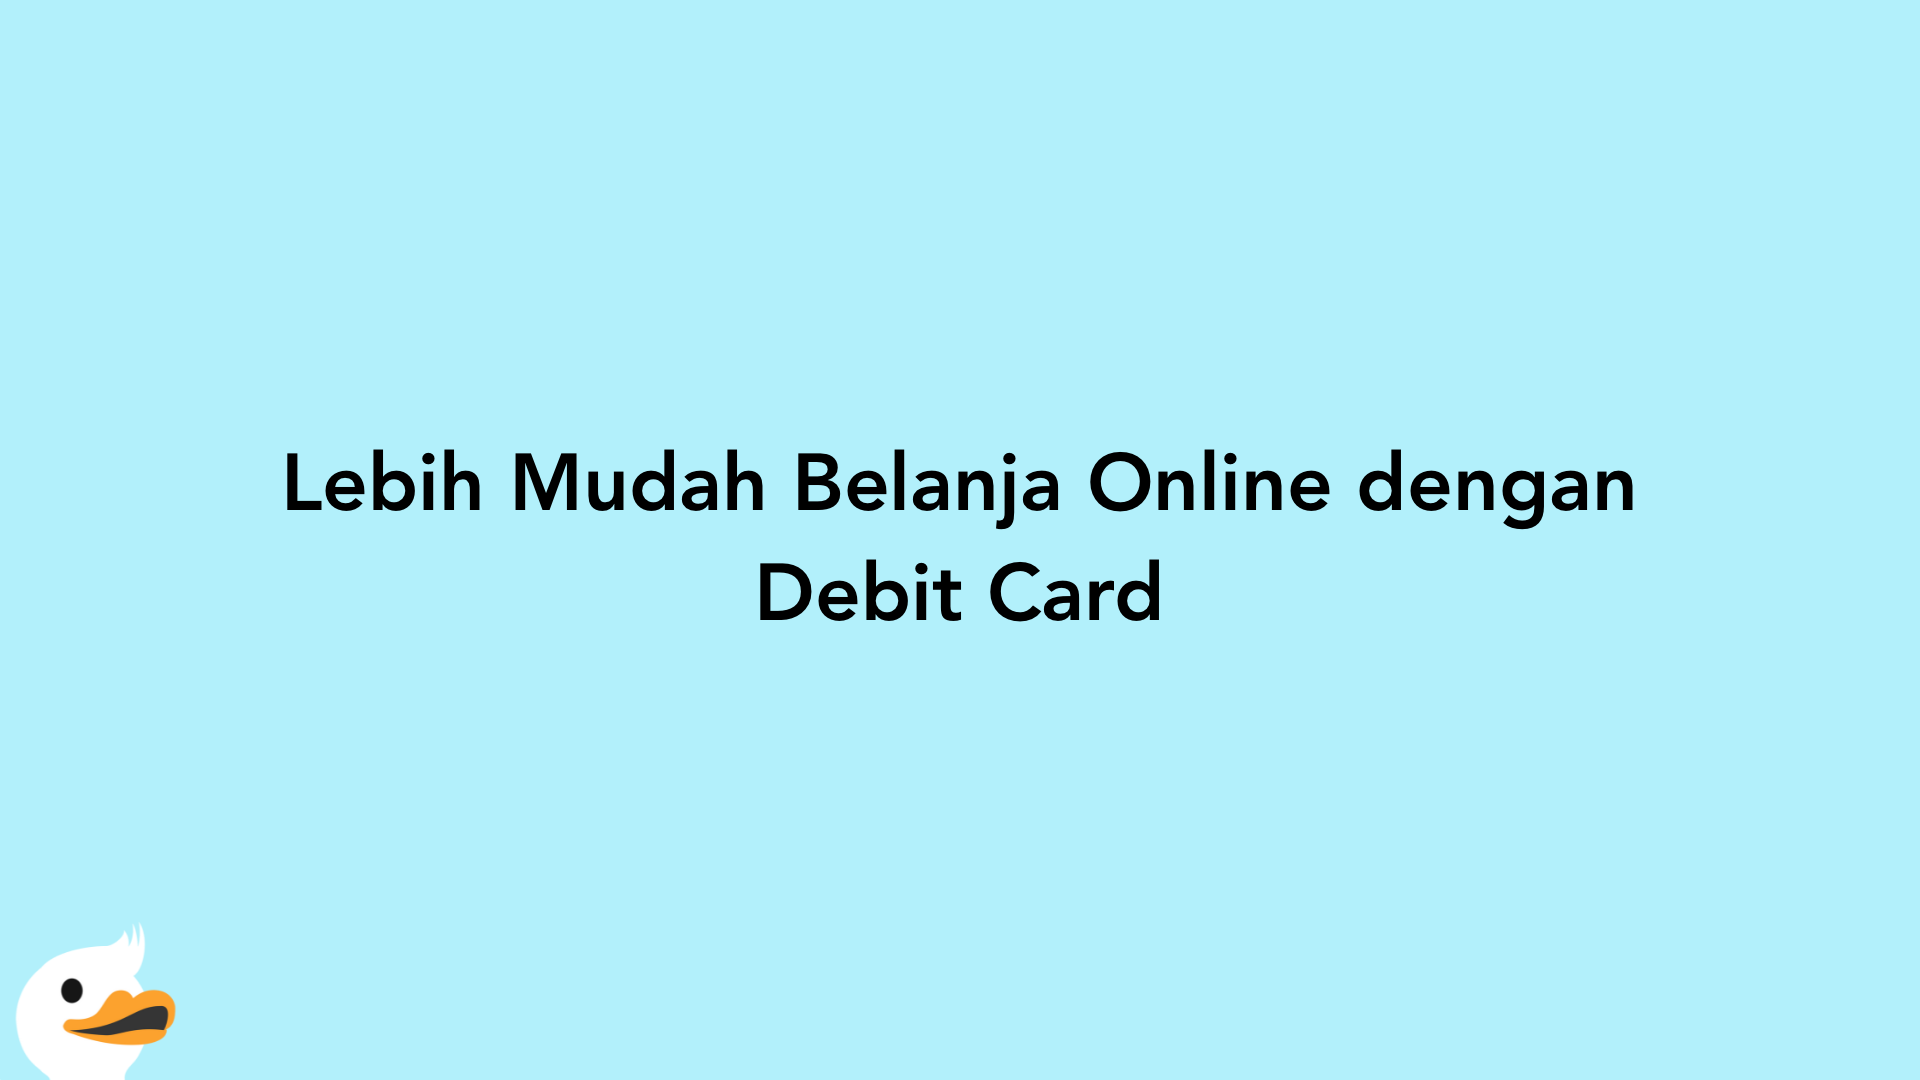 Lebih Mudah Belanja Online dengan Debit Card